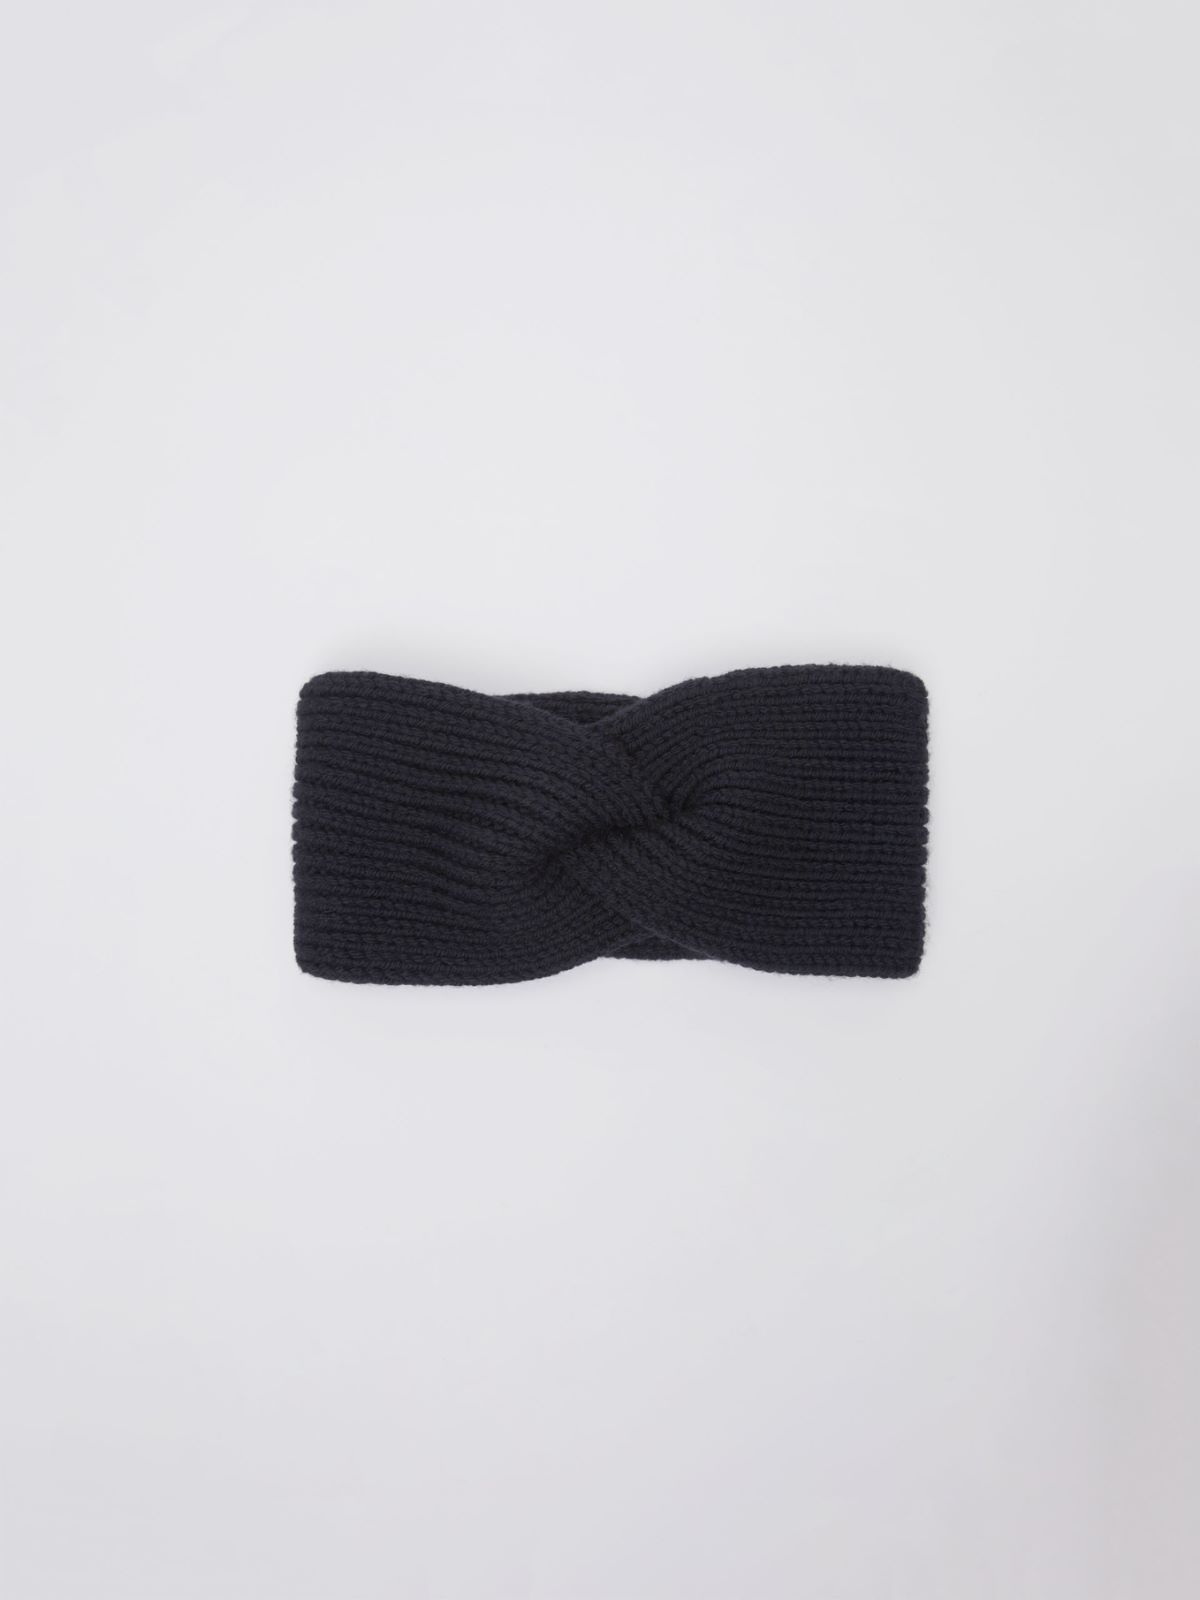 Braided headband - BLACK - Weekend Max Mara - 2